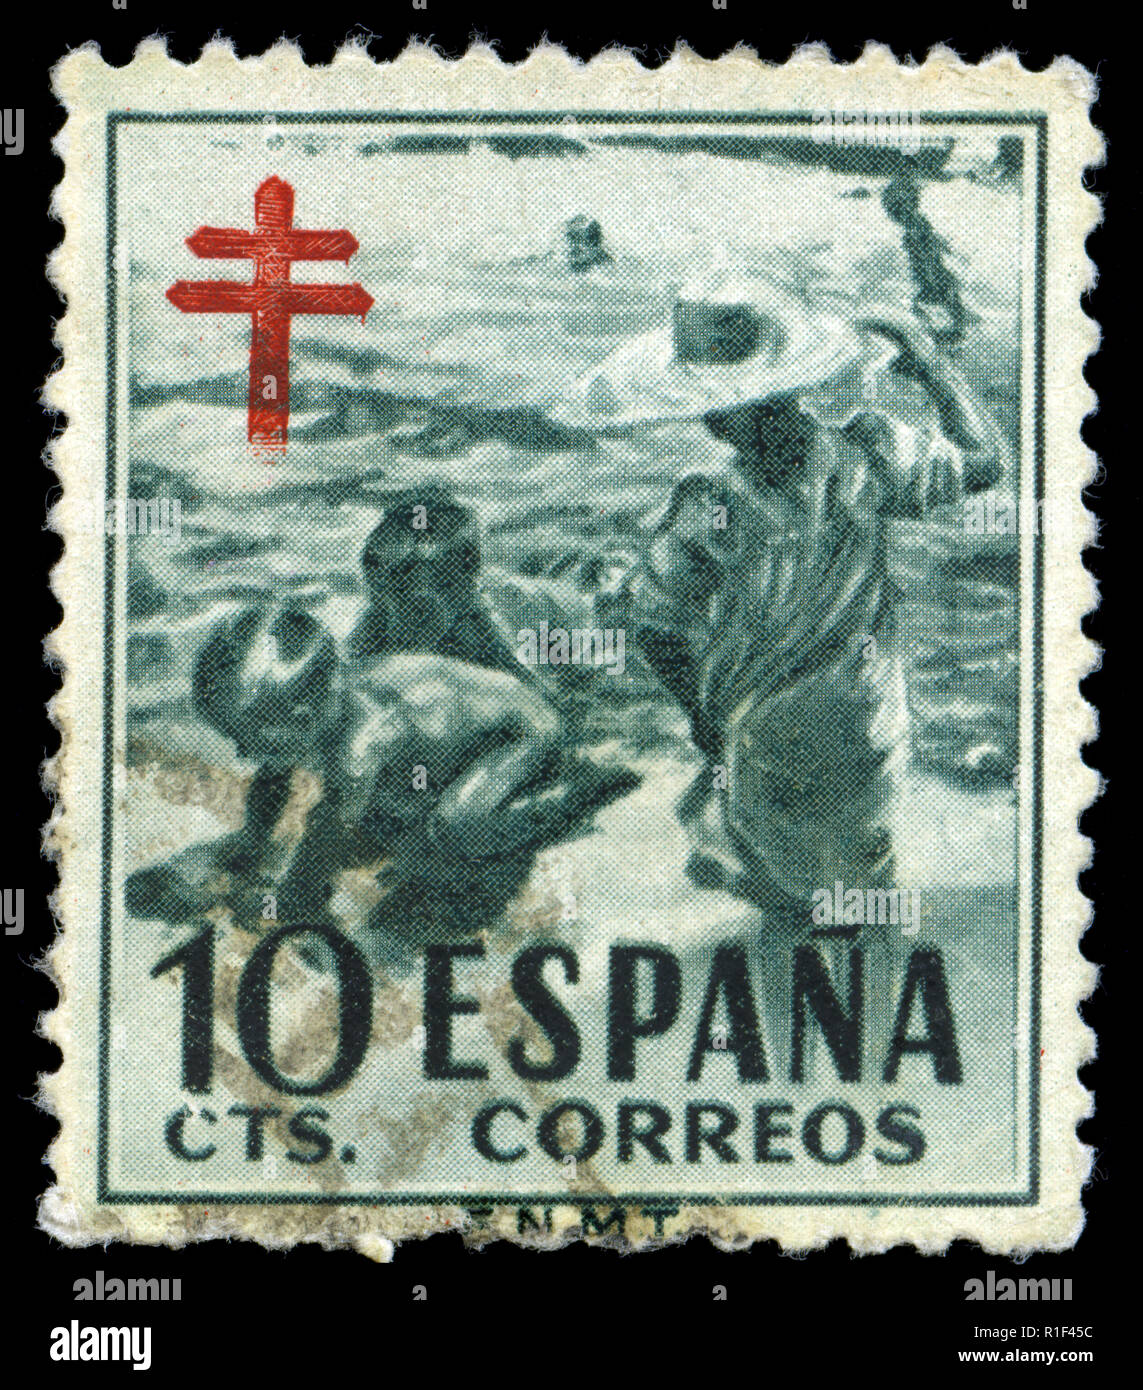 Timbres-poste de l'Espagne dans la Pro-tuberculose série émise en 1951 Banque D'Images